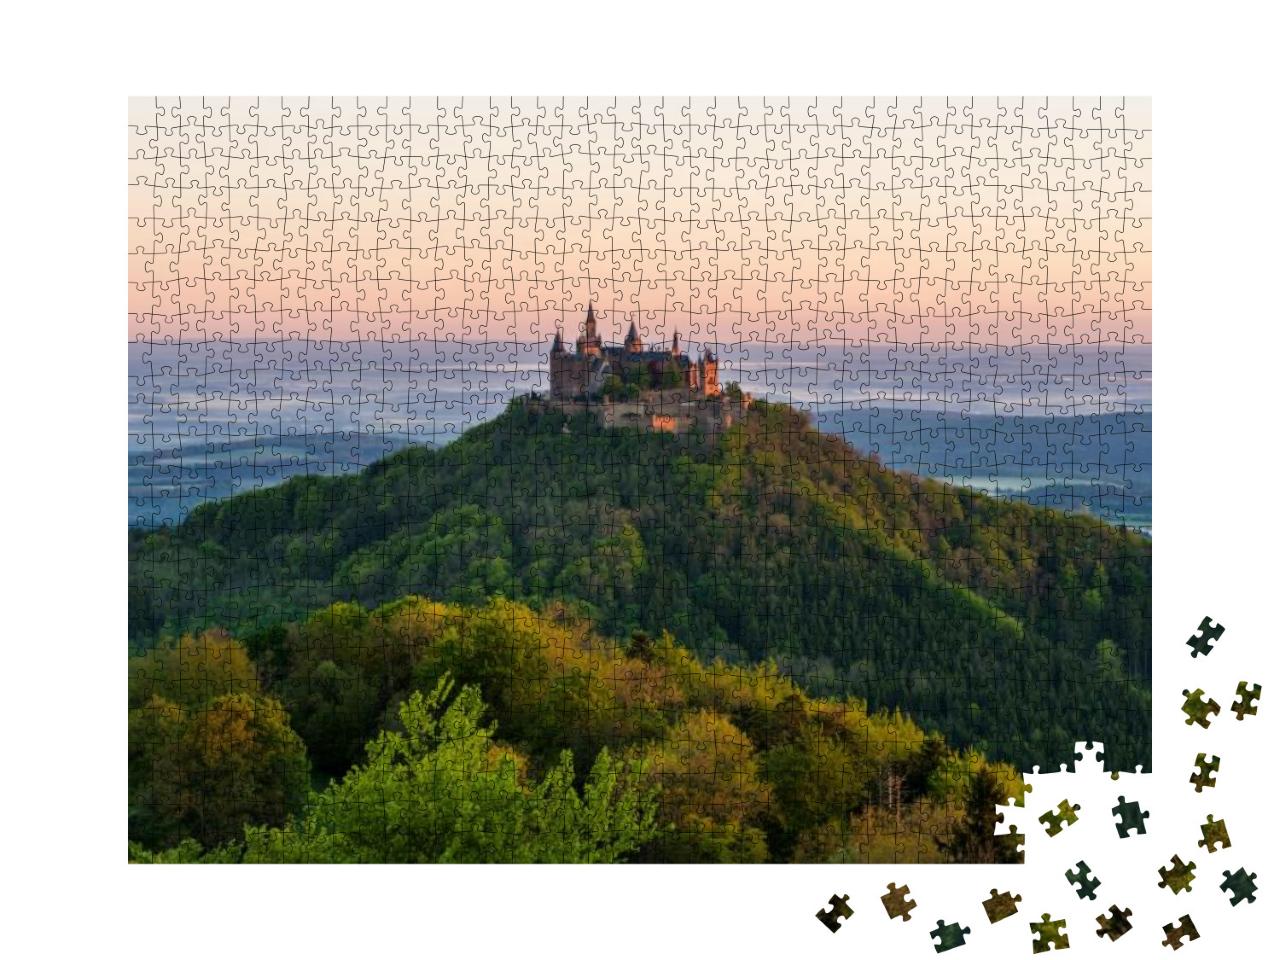 Puzzle 1000 Teile „Goldene Stunde auf der Burg Hohenzollern“